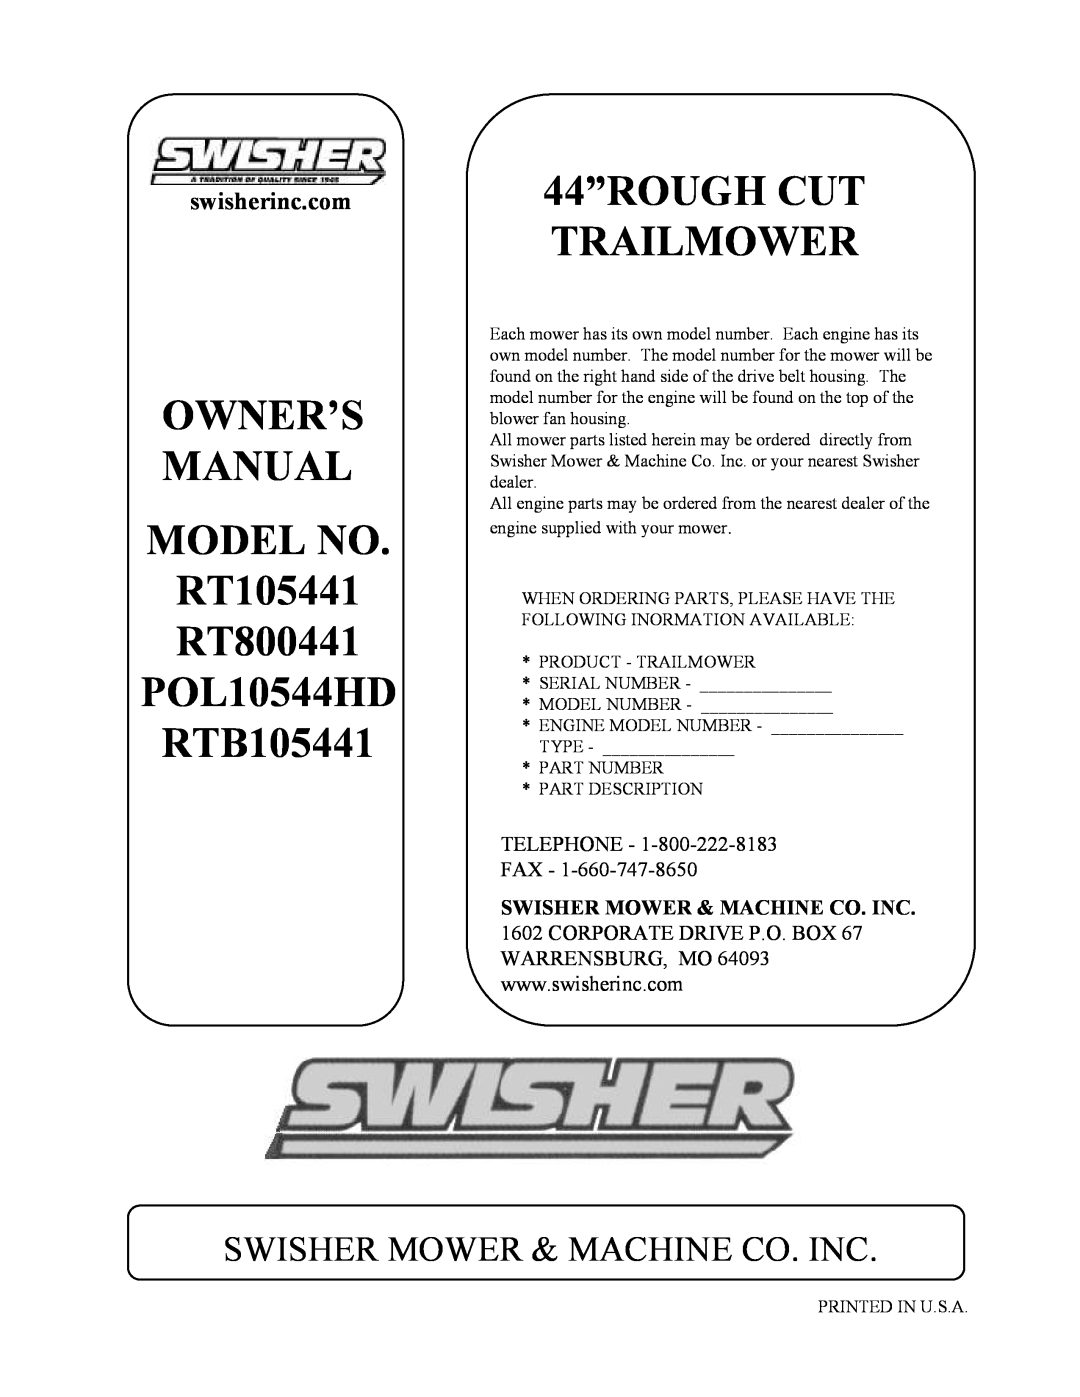 Swisher RT105441, RTB105441, RT800441, POL10544HD 44”ROUGH CUT TRAILMOWER, Swisher Mower & Machine Co. Inc, swisherinc.com 